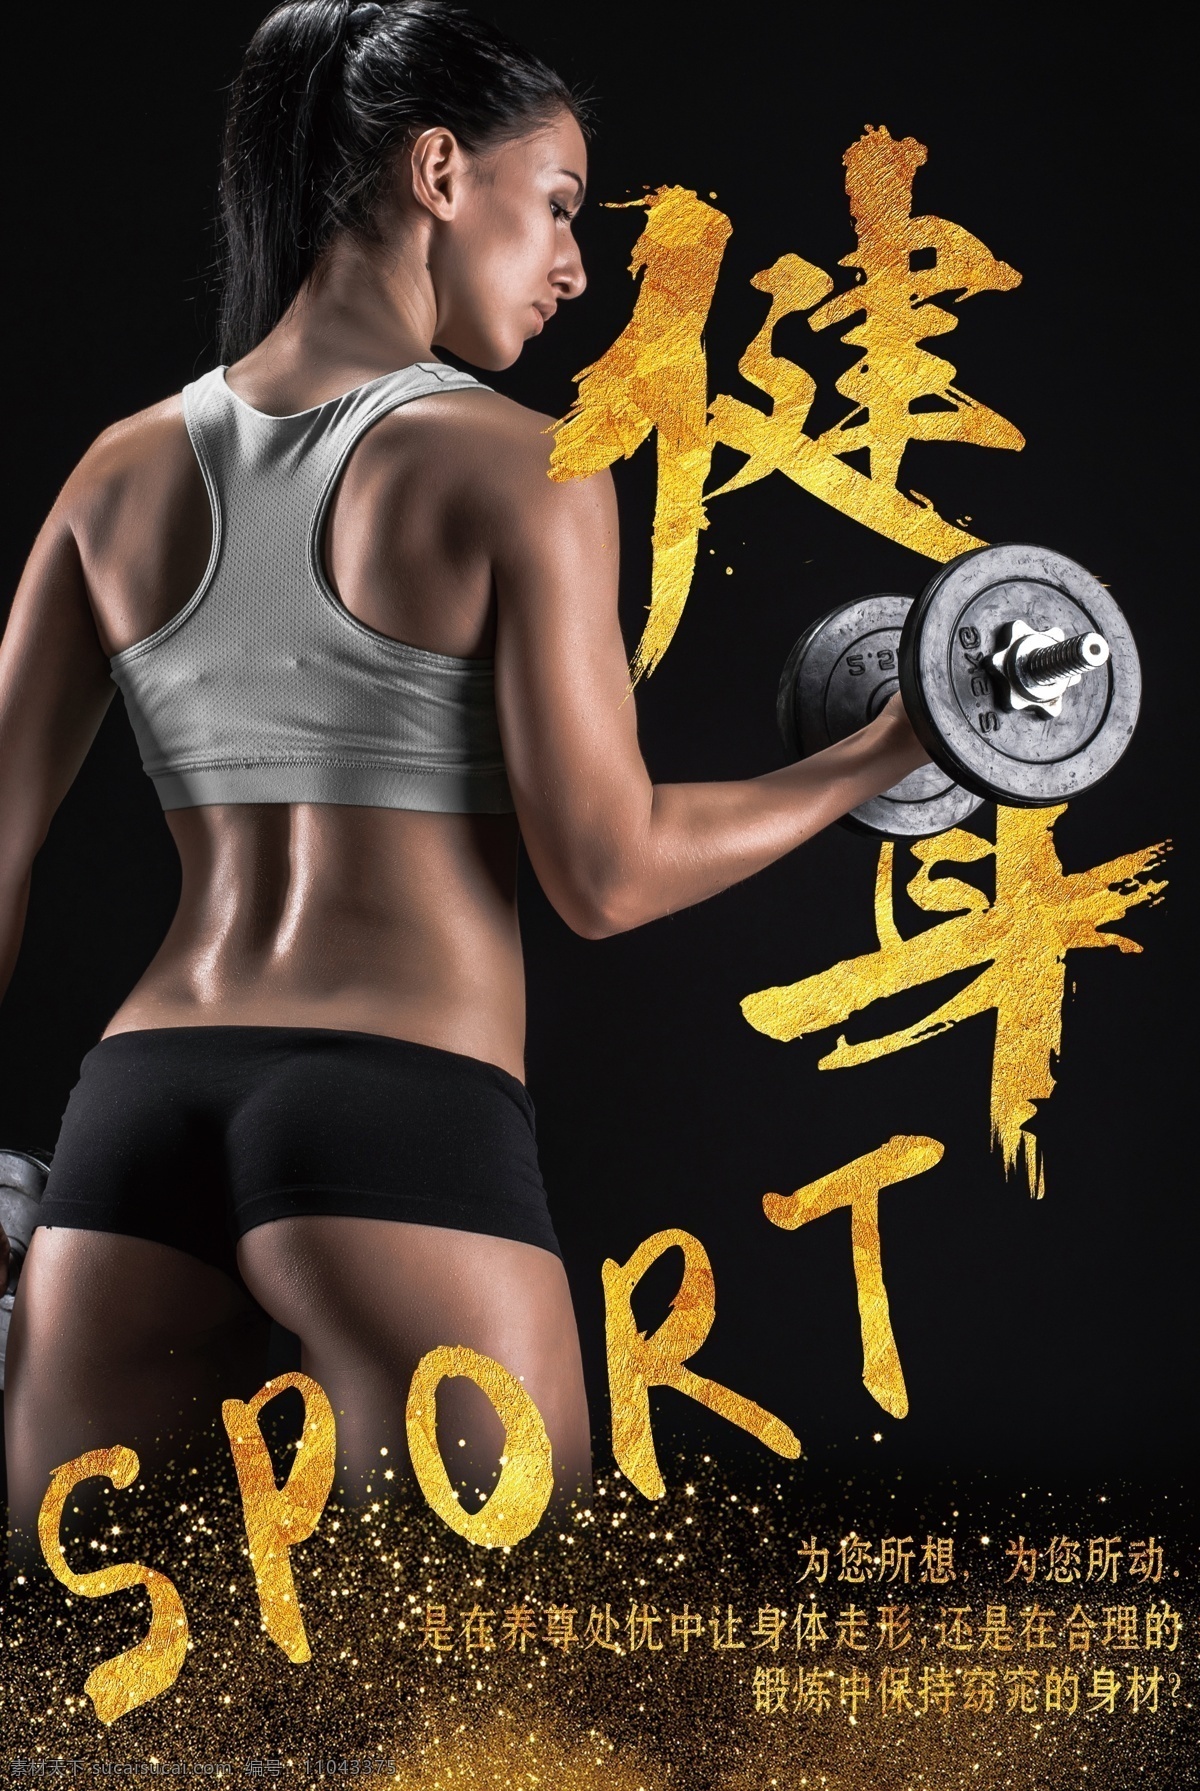 创意 全民健身 健身运动 健身器材 健身素材 健身俱乐部 健身广告 健身宣传单 健身美女 健身培训 健身图片 健身体育 健身背景图片 健身房 招生 海报